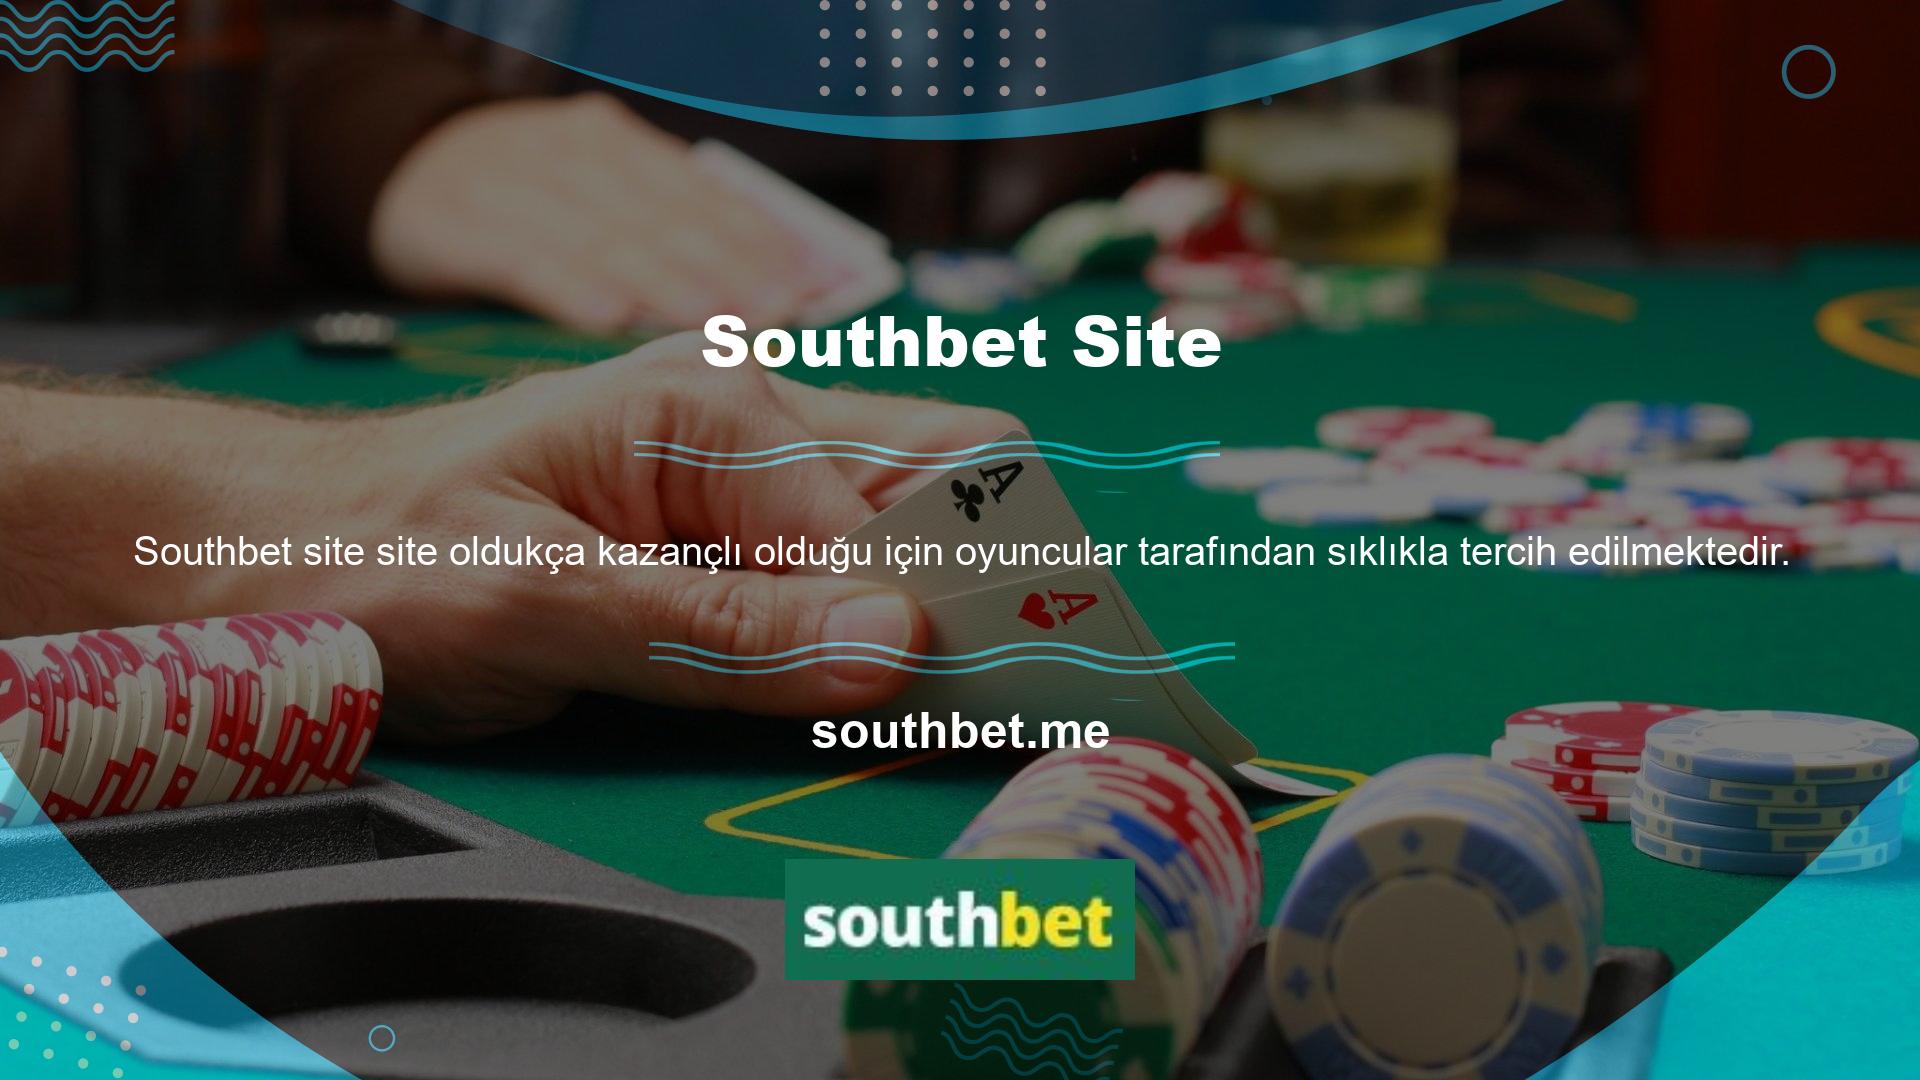 Yararlı programları ve web sitesi içeriğini kullanmak için Southbet giriş yapmalısınız